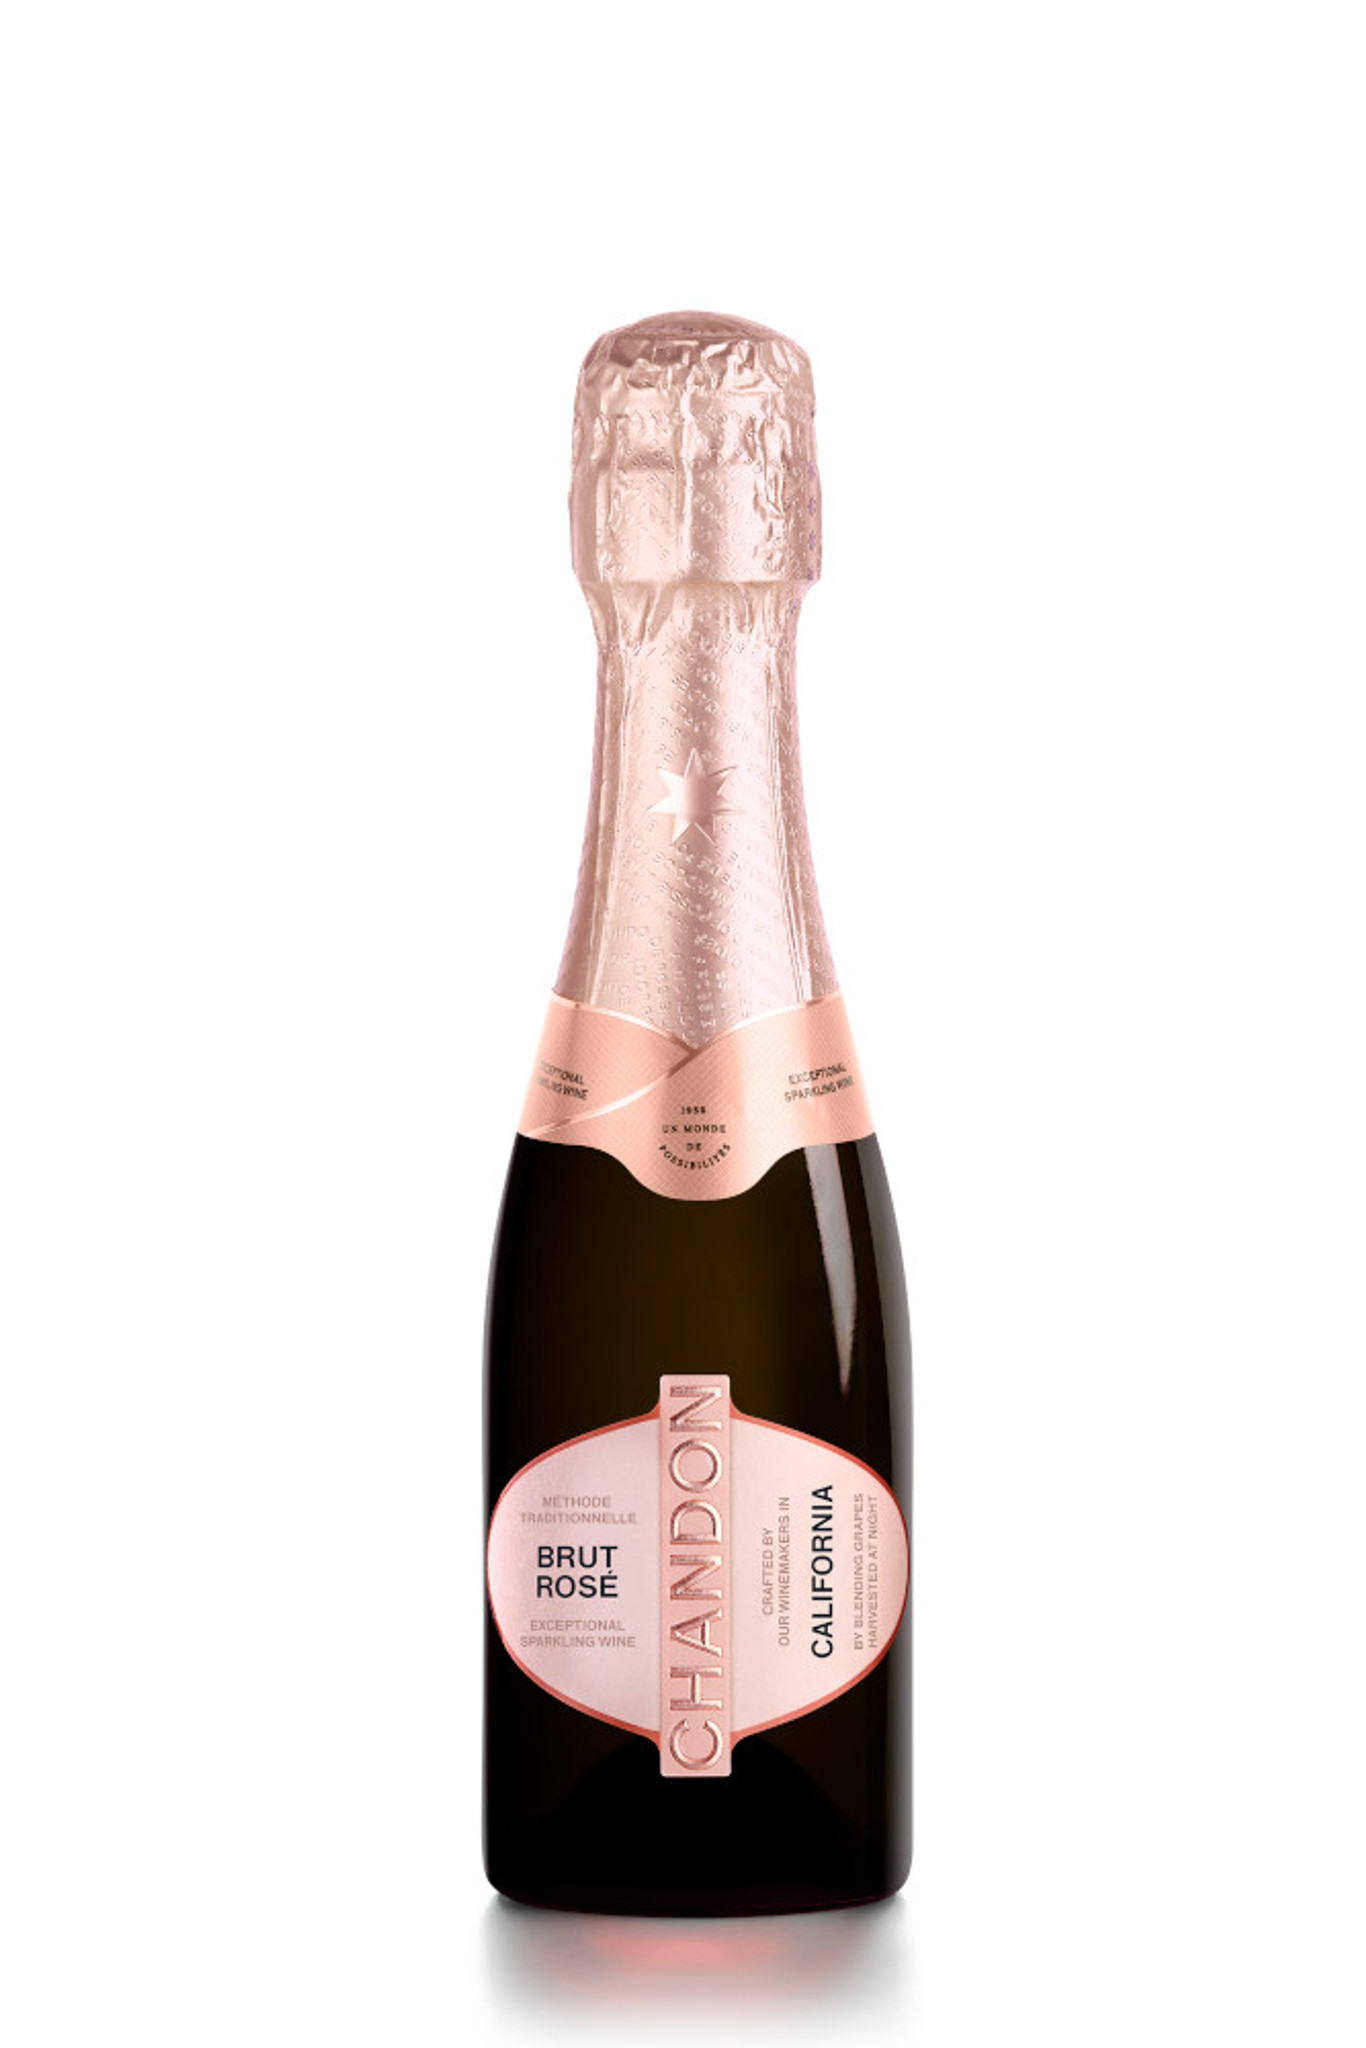 Moet Chandon Brut Rose Imperial Champagne 15lt Magnum